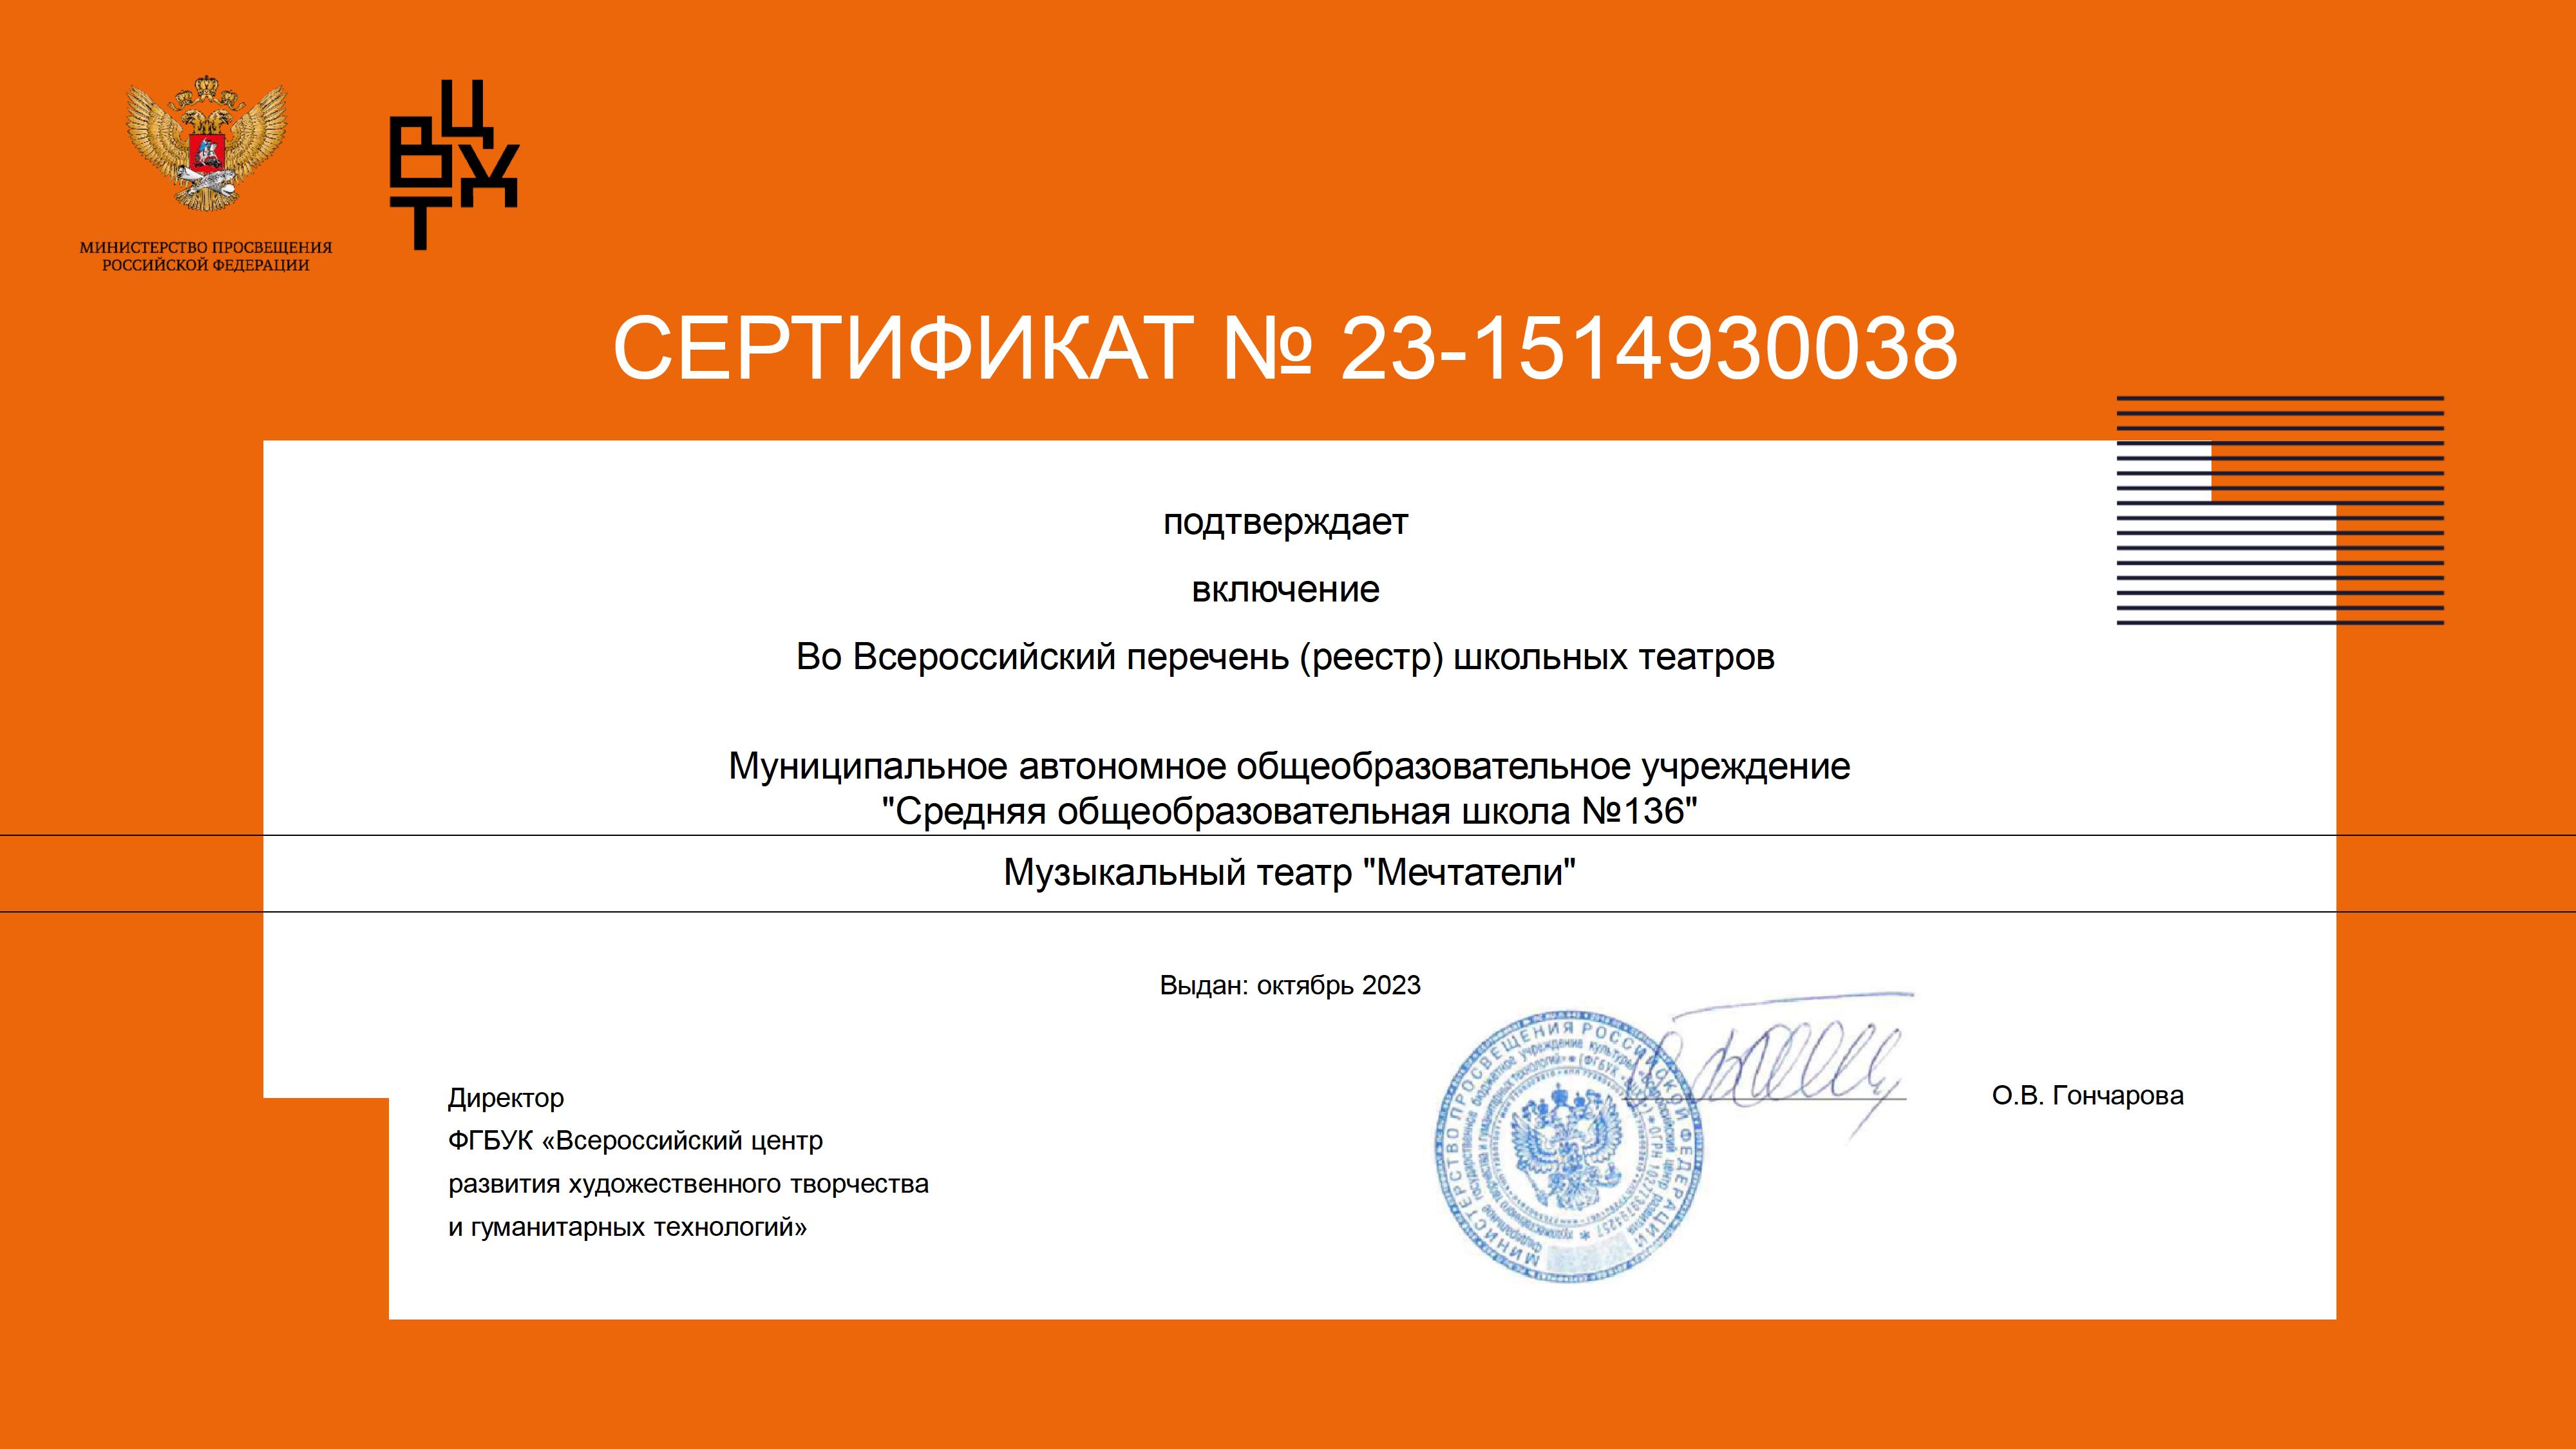 Сертификат №23-1514930038 о включении во Всероссийский перечень школьных театров